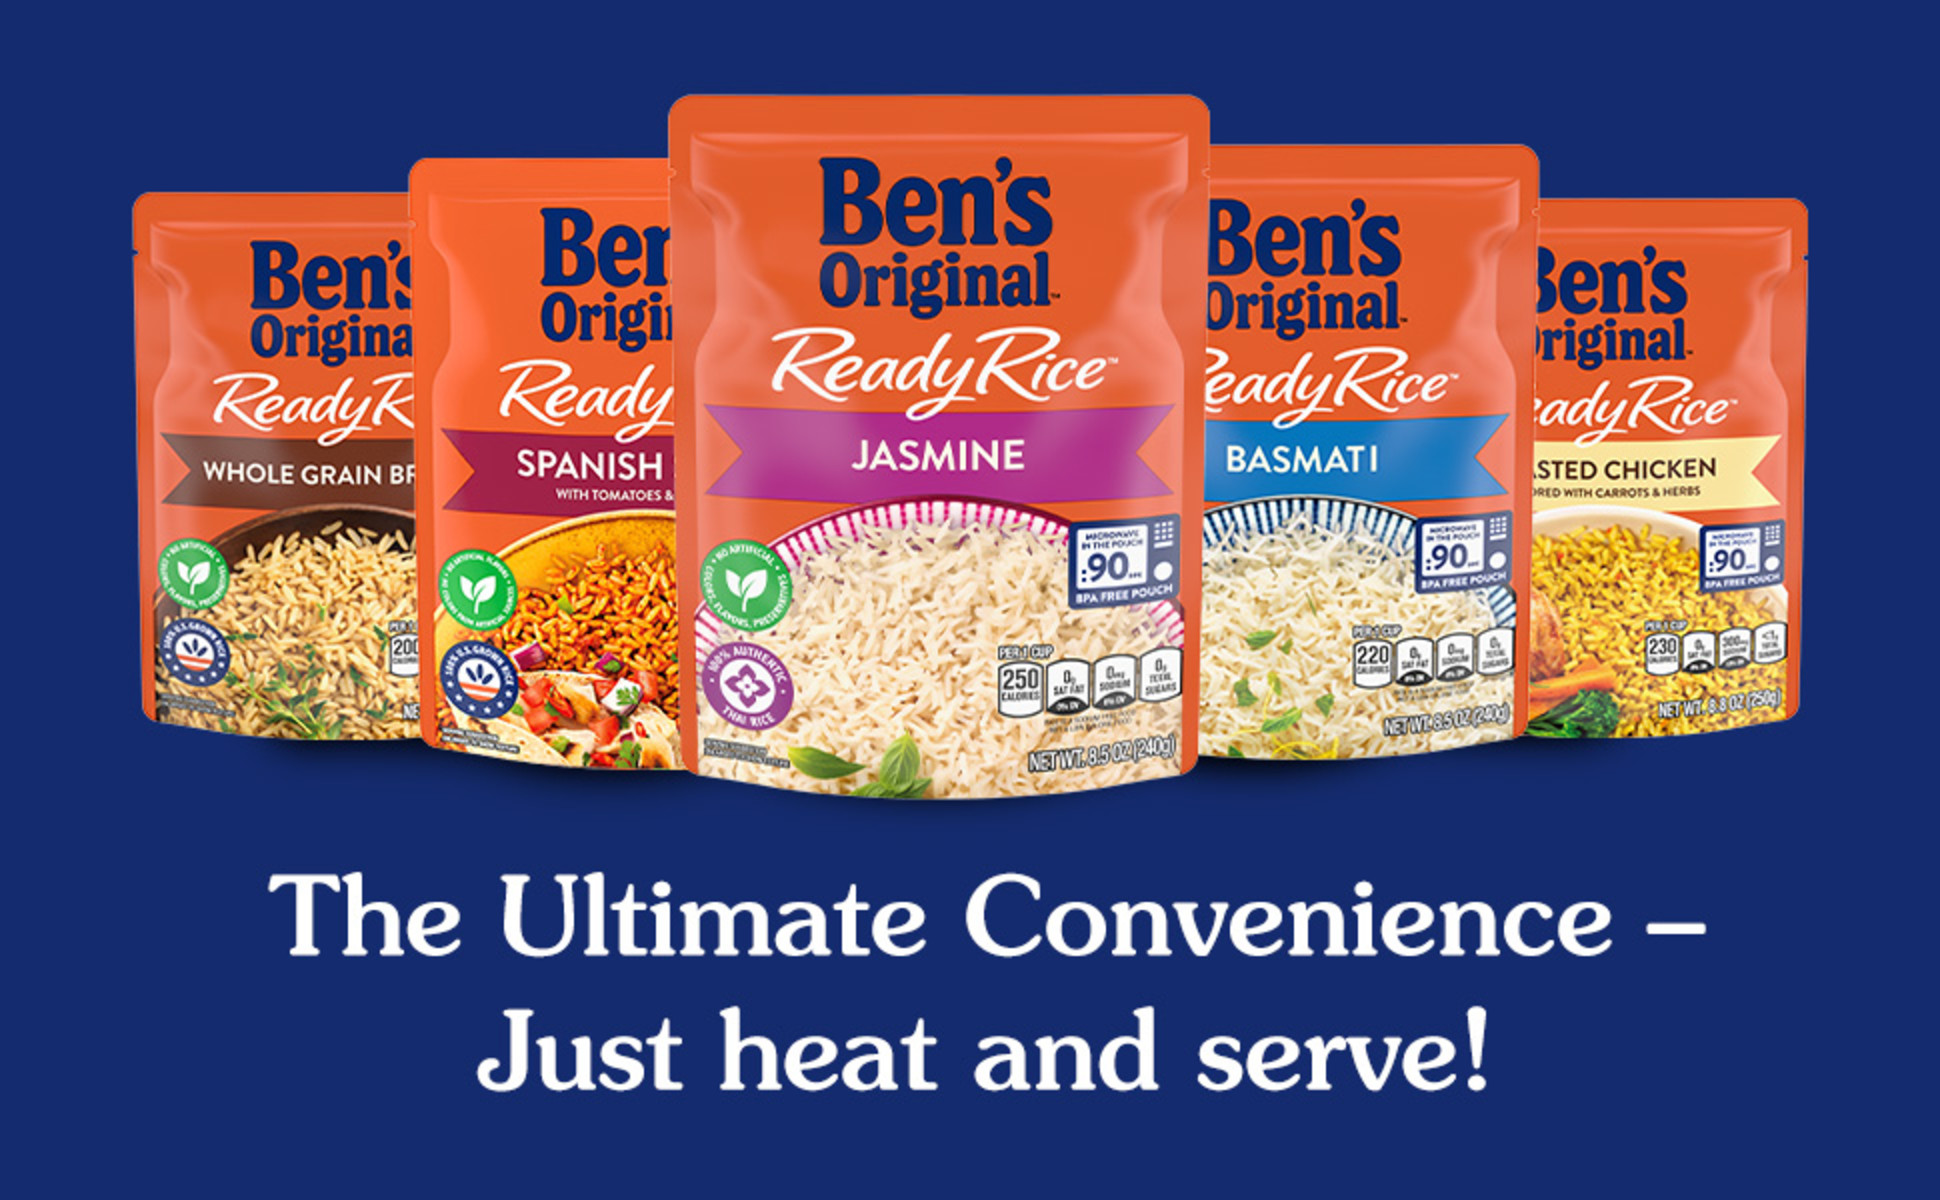 Ben's Original Original Long Grain White Ready Rice, Easy Dinner